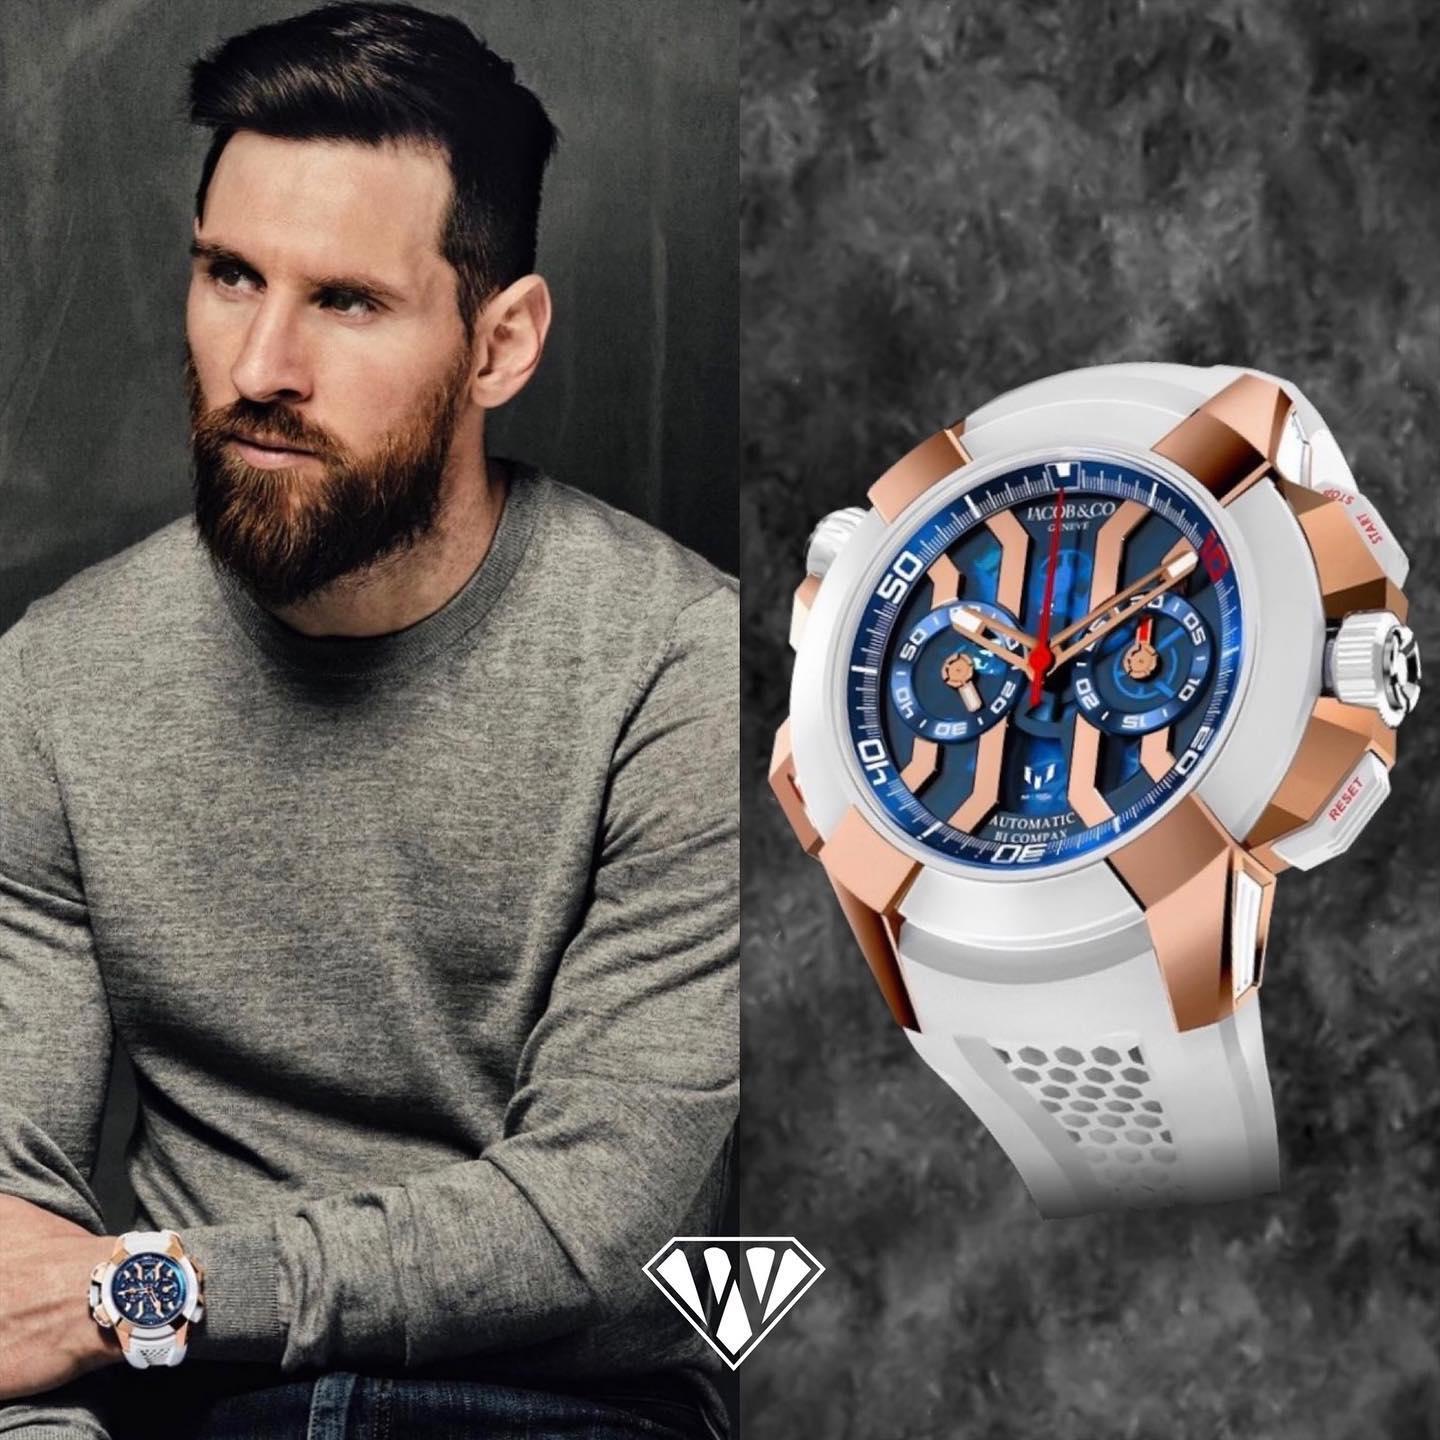 Không chỉ là Vua sân cỏ, Lionel Messi còn là ông trùm kinh doanh khét tiếng: Xây dựng tài sản 600 triệu USD, mỗi năm bỏ túi 10 triệu USD chỉ nhờ một khoản - Ảnh 6.